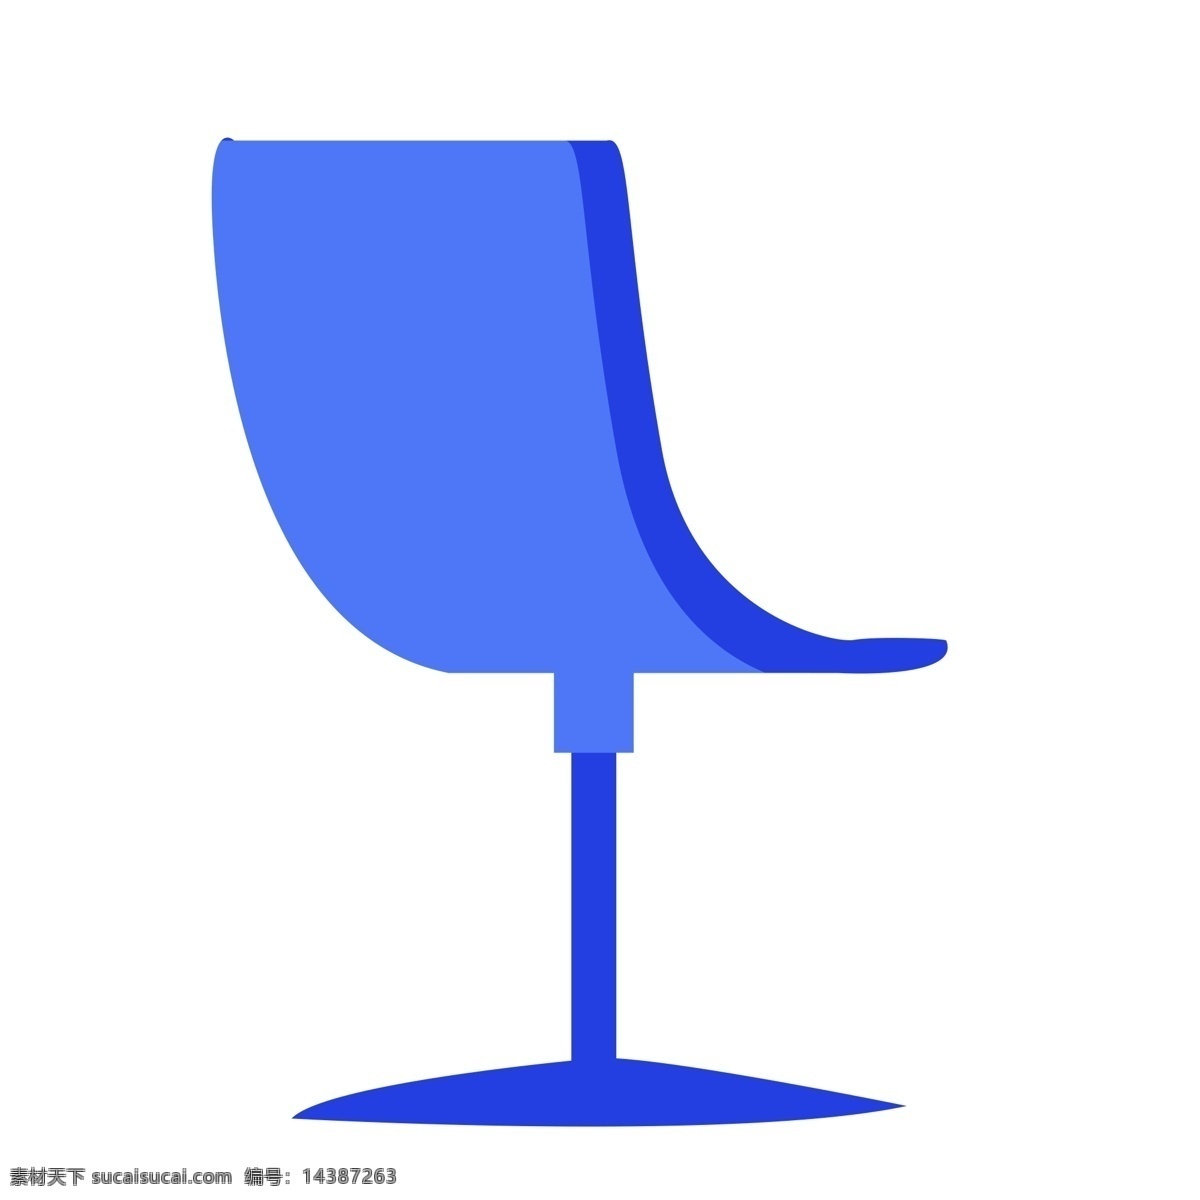 紫 蓝色 转转 椅子 免 抠 图 卡通椅子 扁平化椅子 科幻蓝椅子 免抠电脑椅